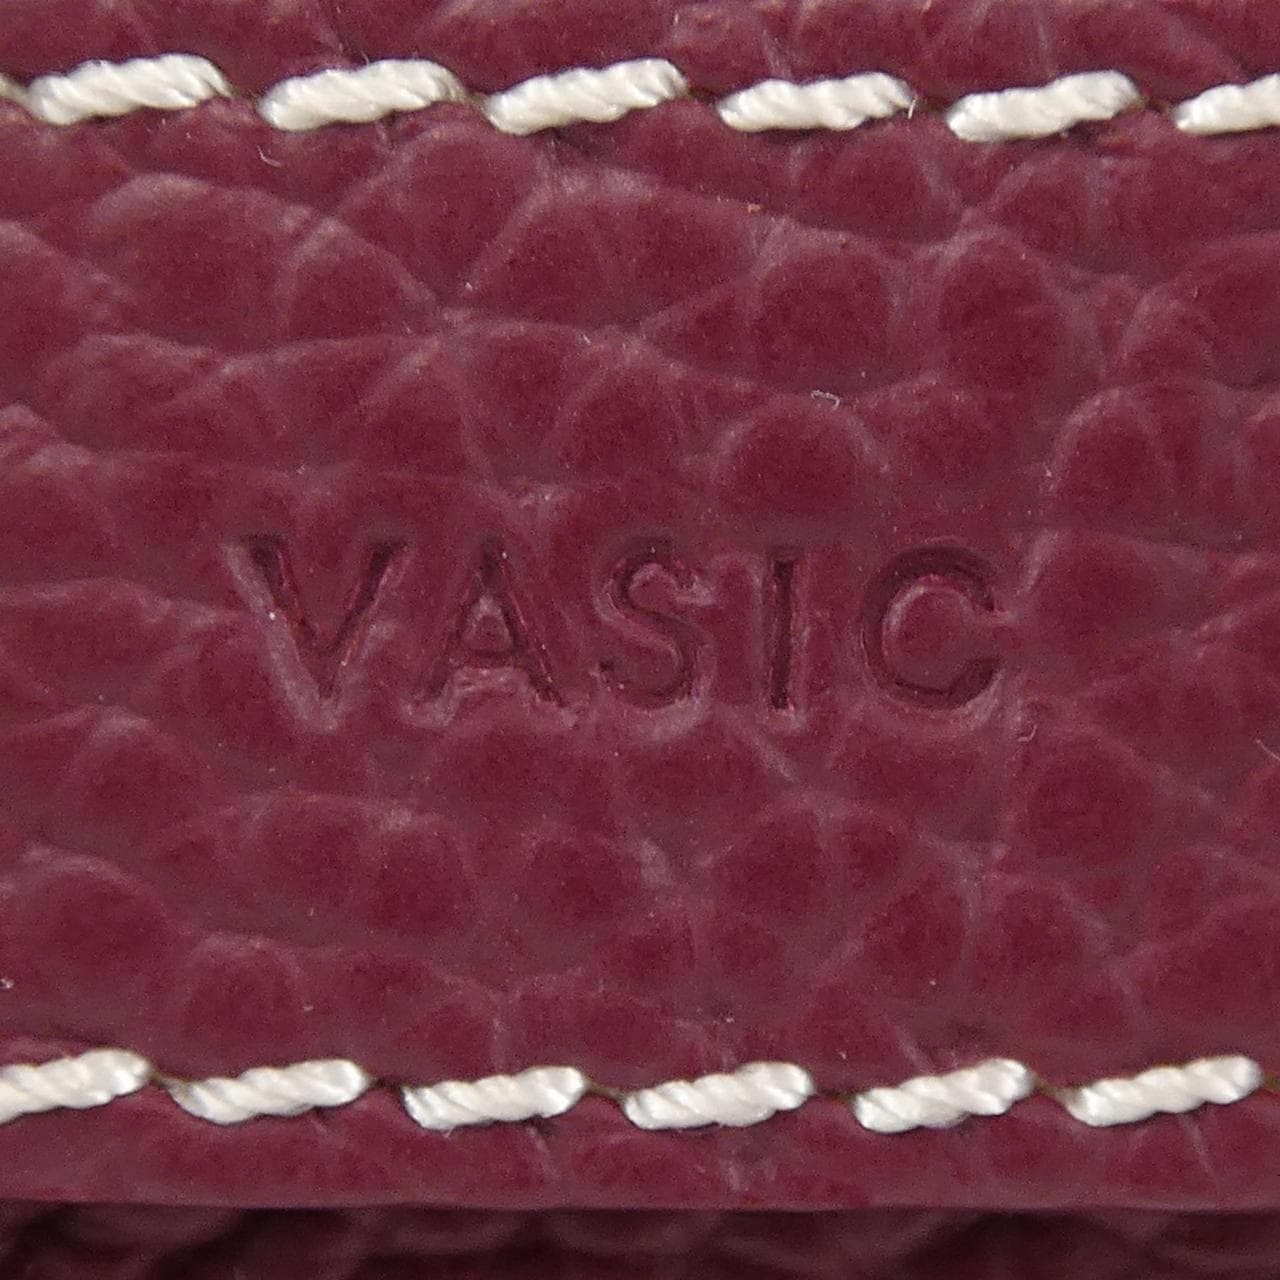 VASIC BAG